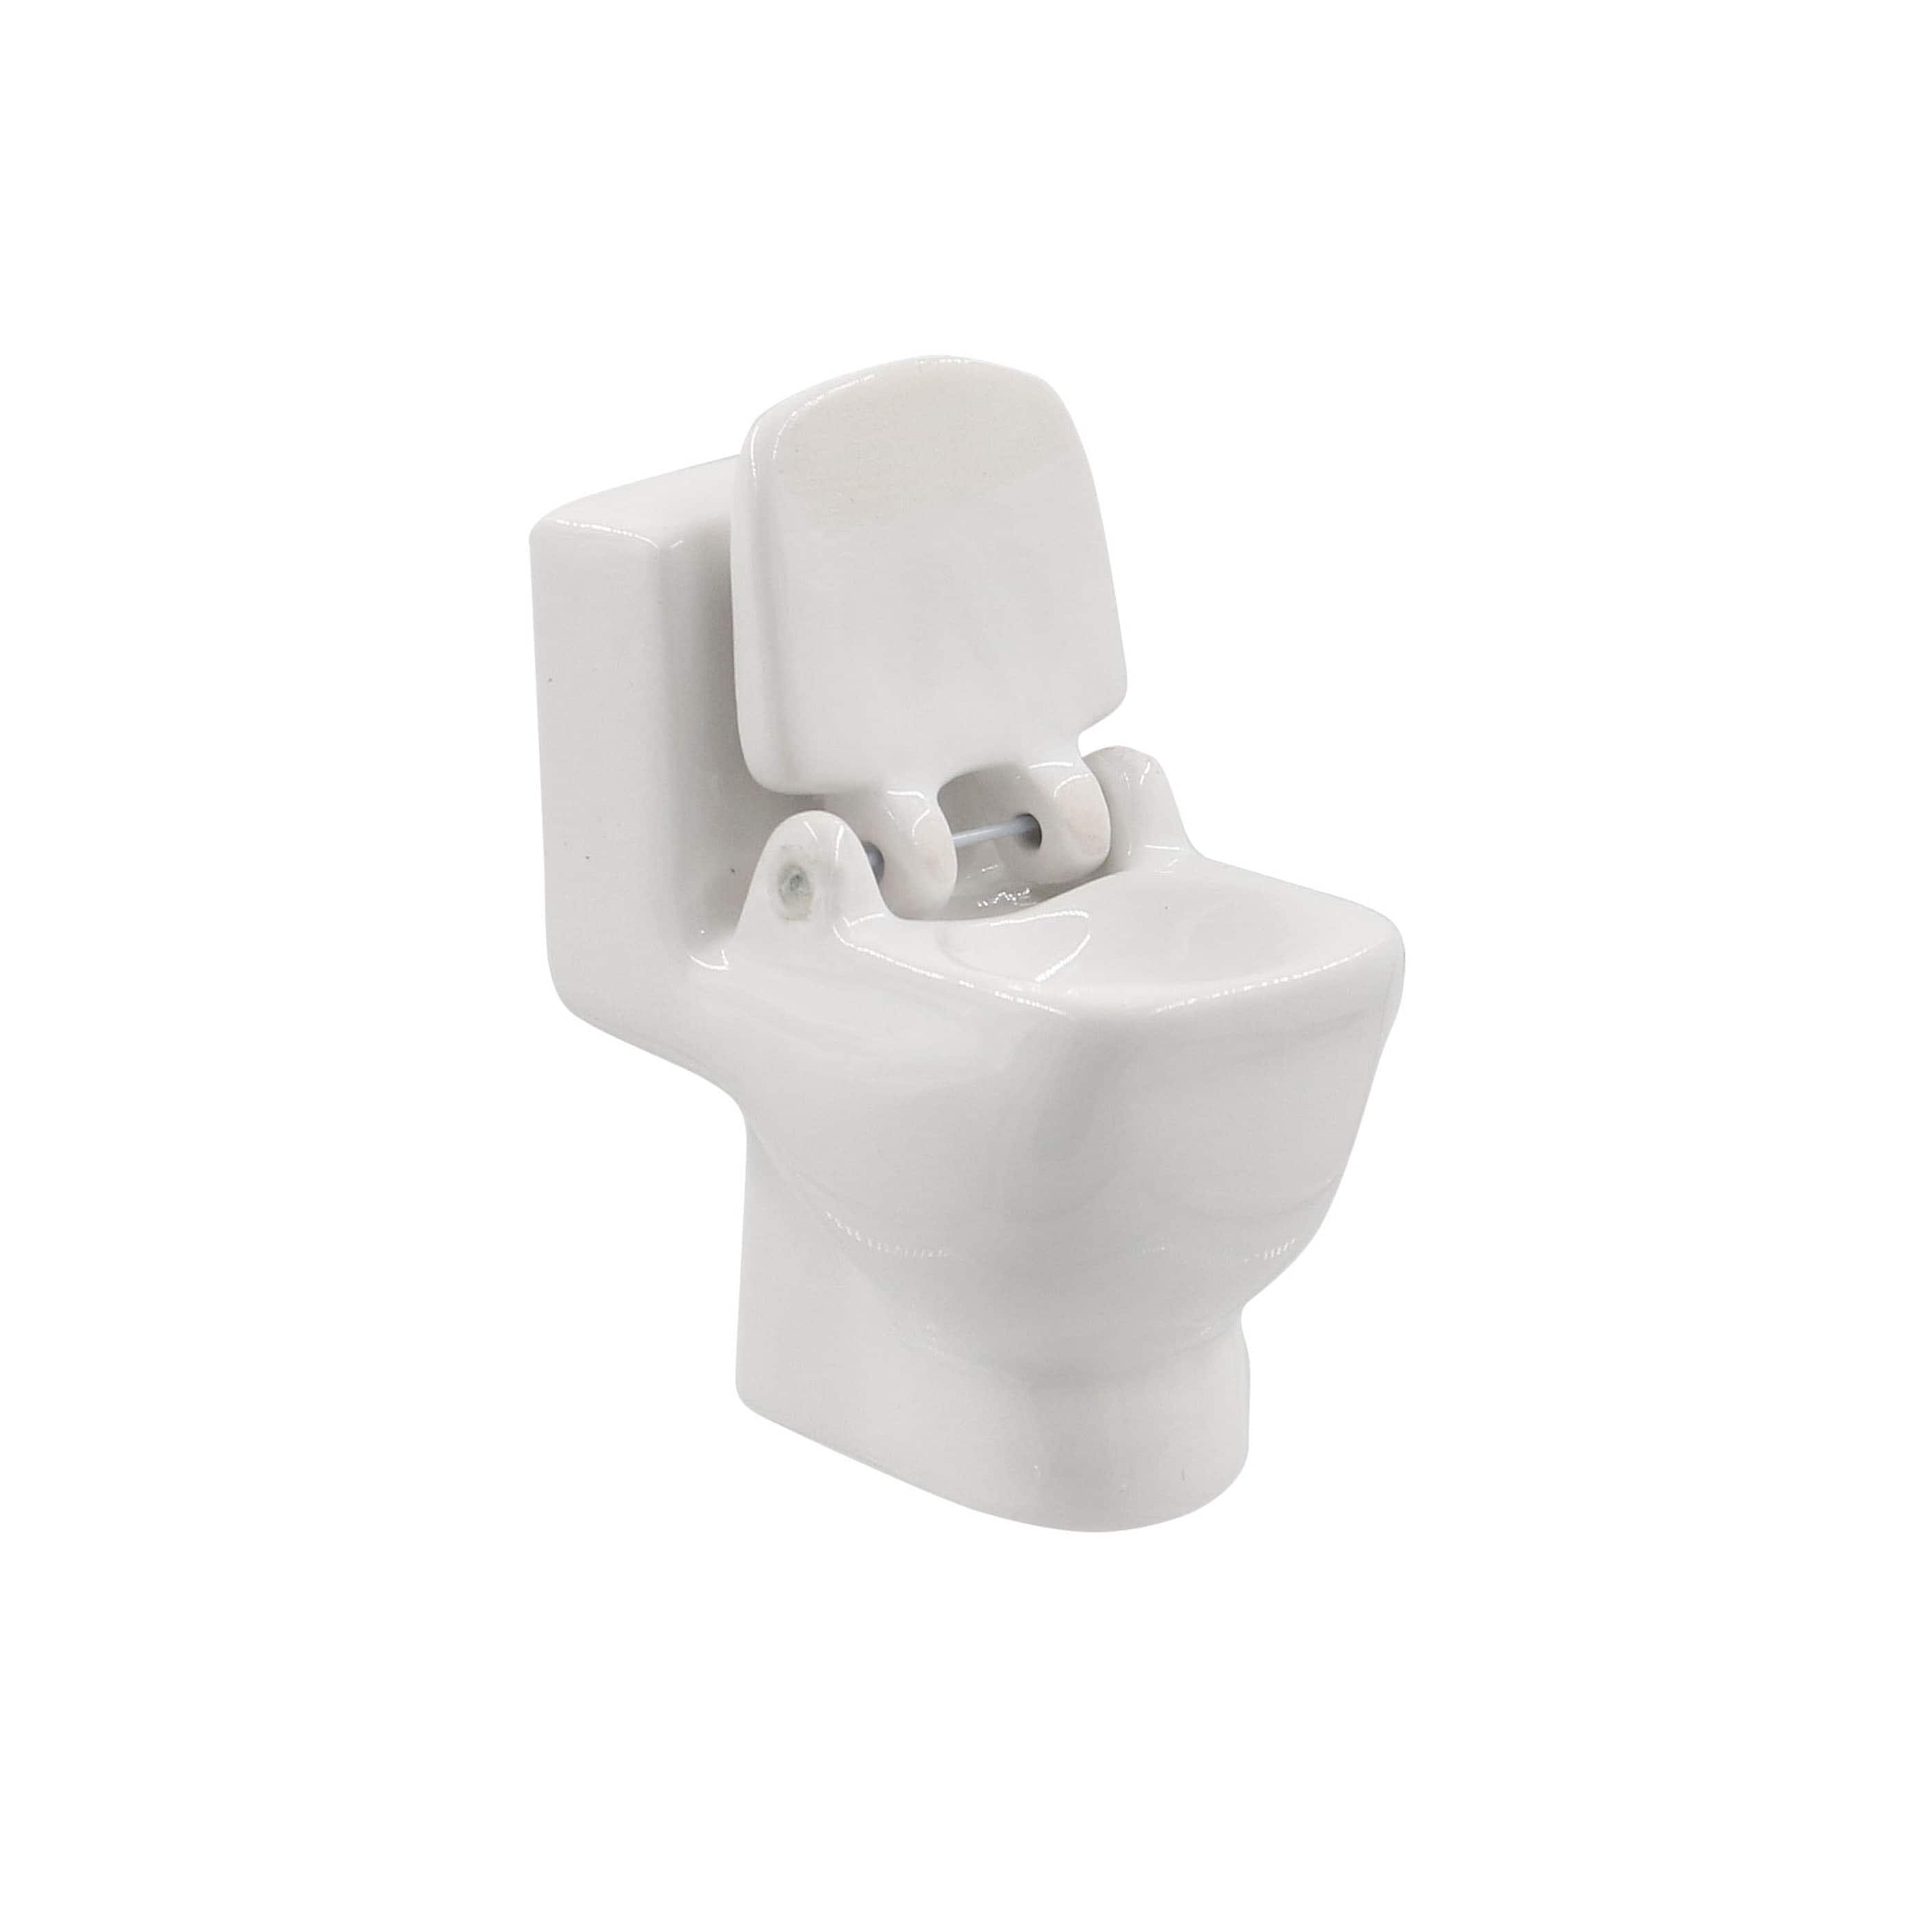 Mini White Toilet by Make Market&#xAE;